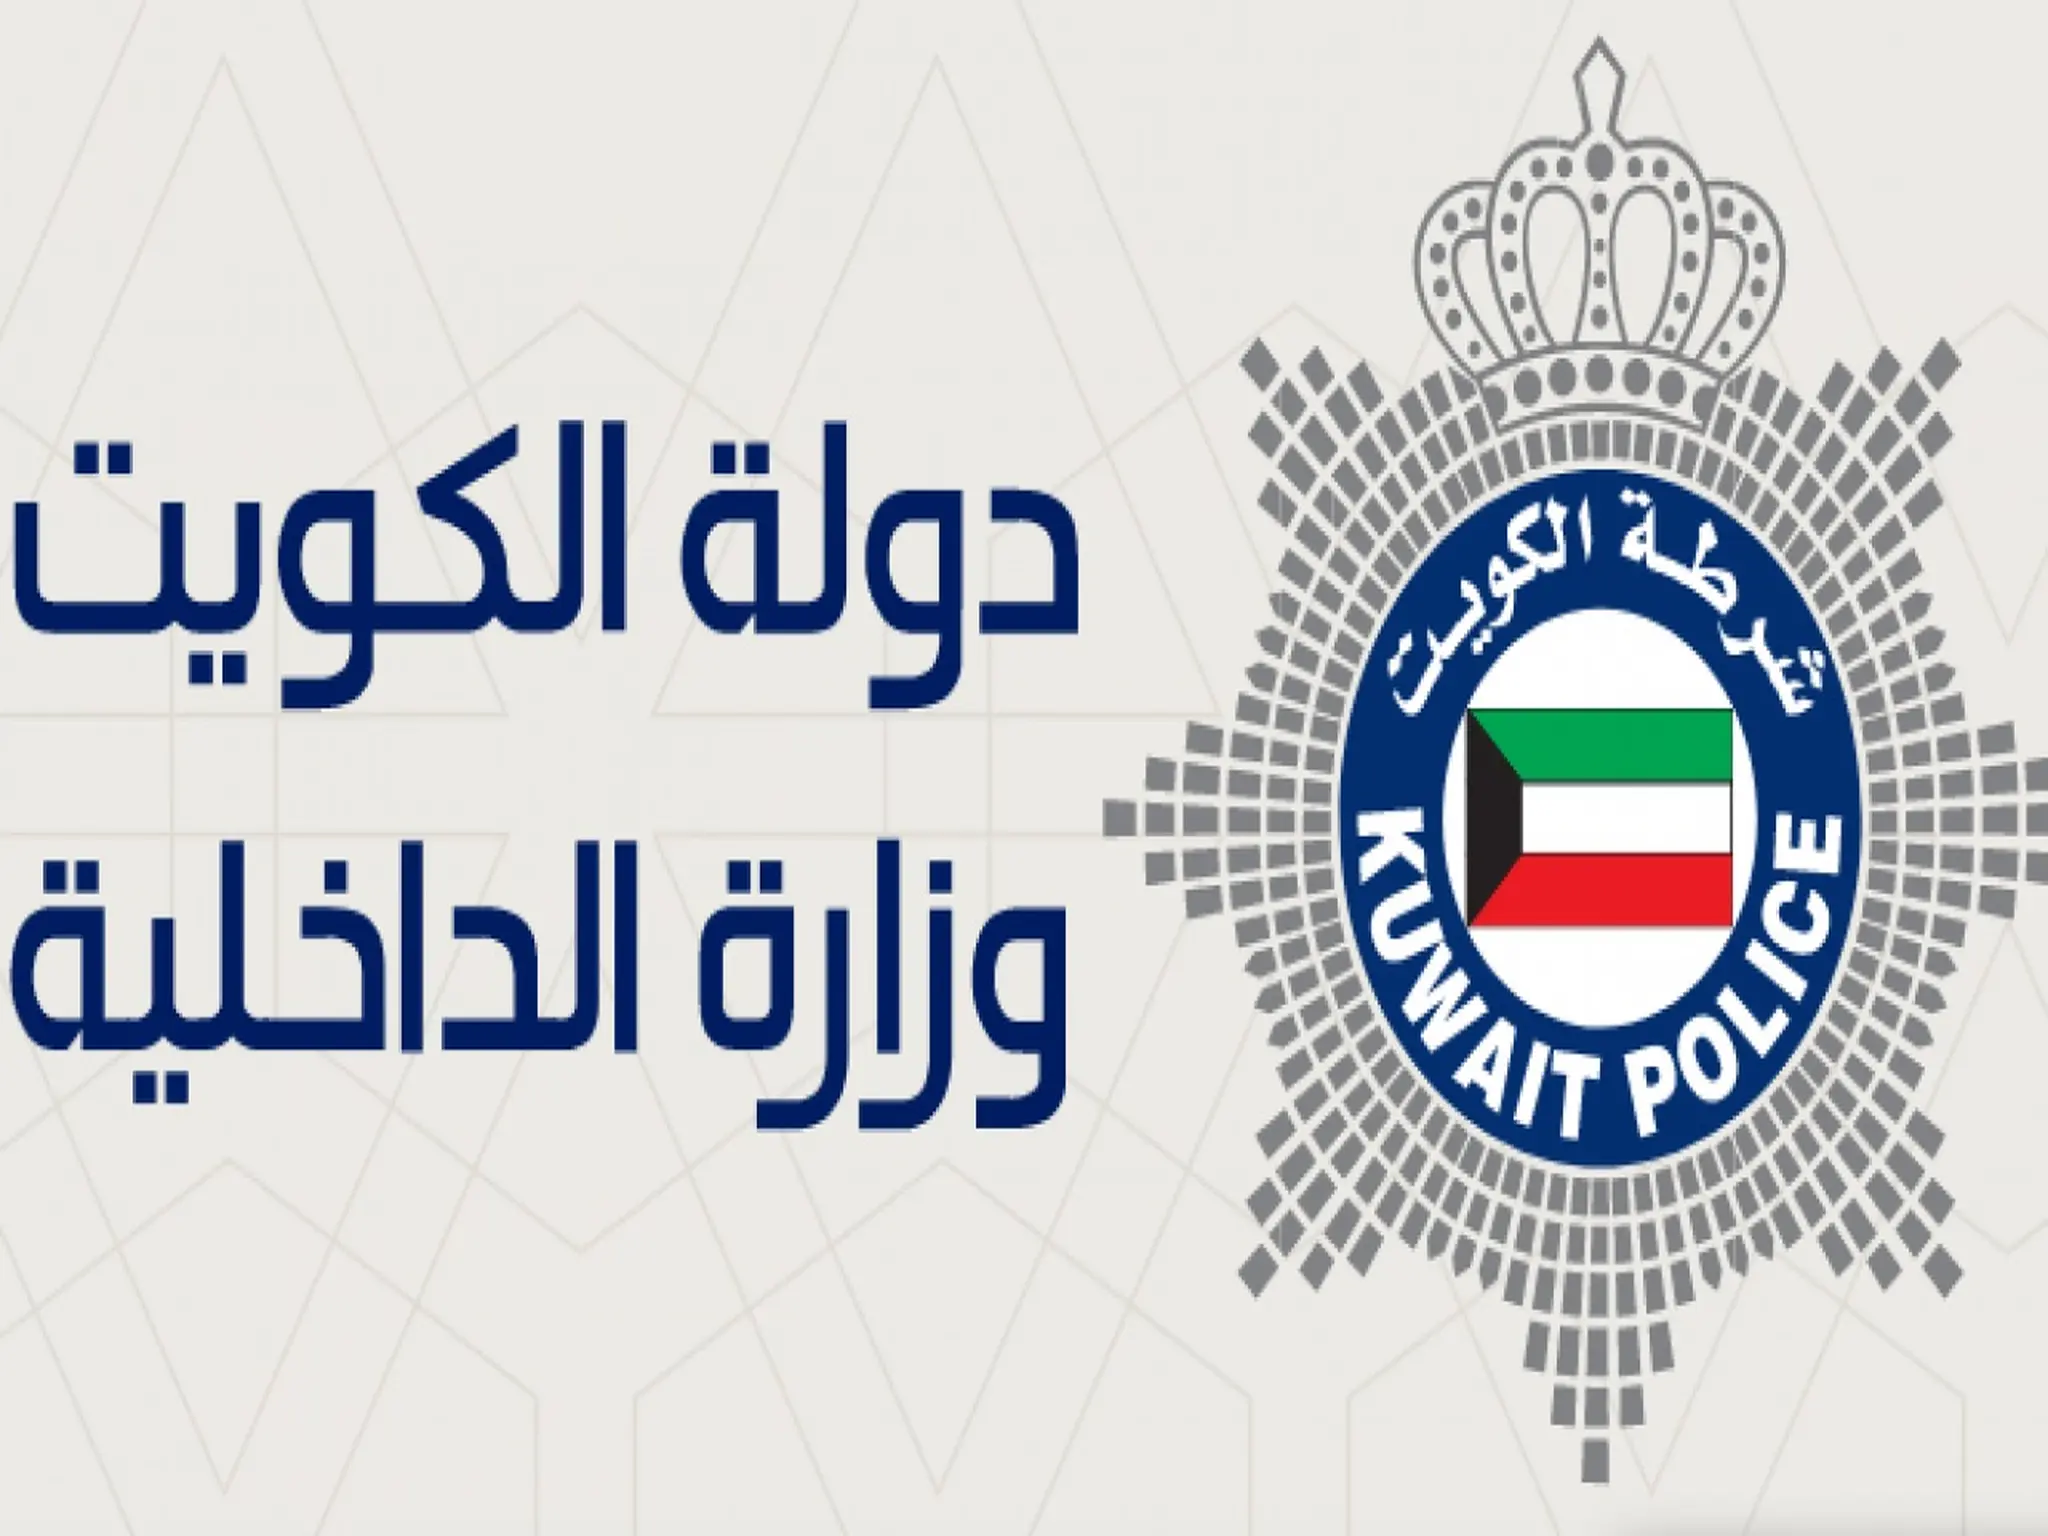  وزارة الداخلية الكويتية تستسقبل طلبات الزيارة ل7جنسيات محددة